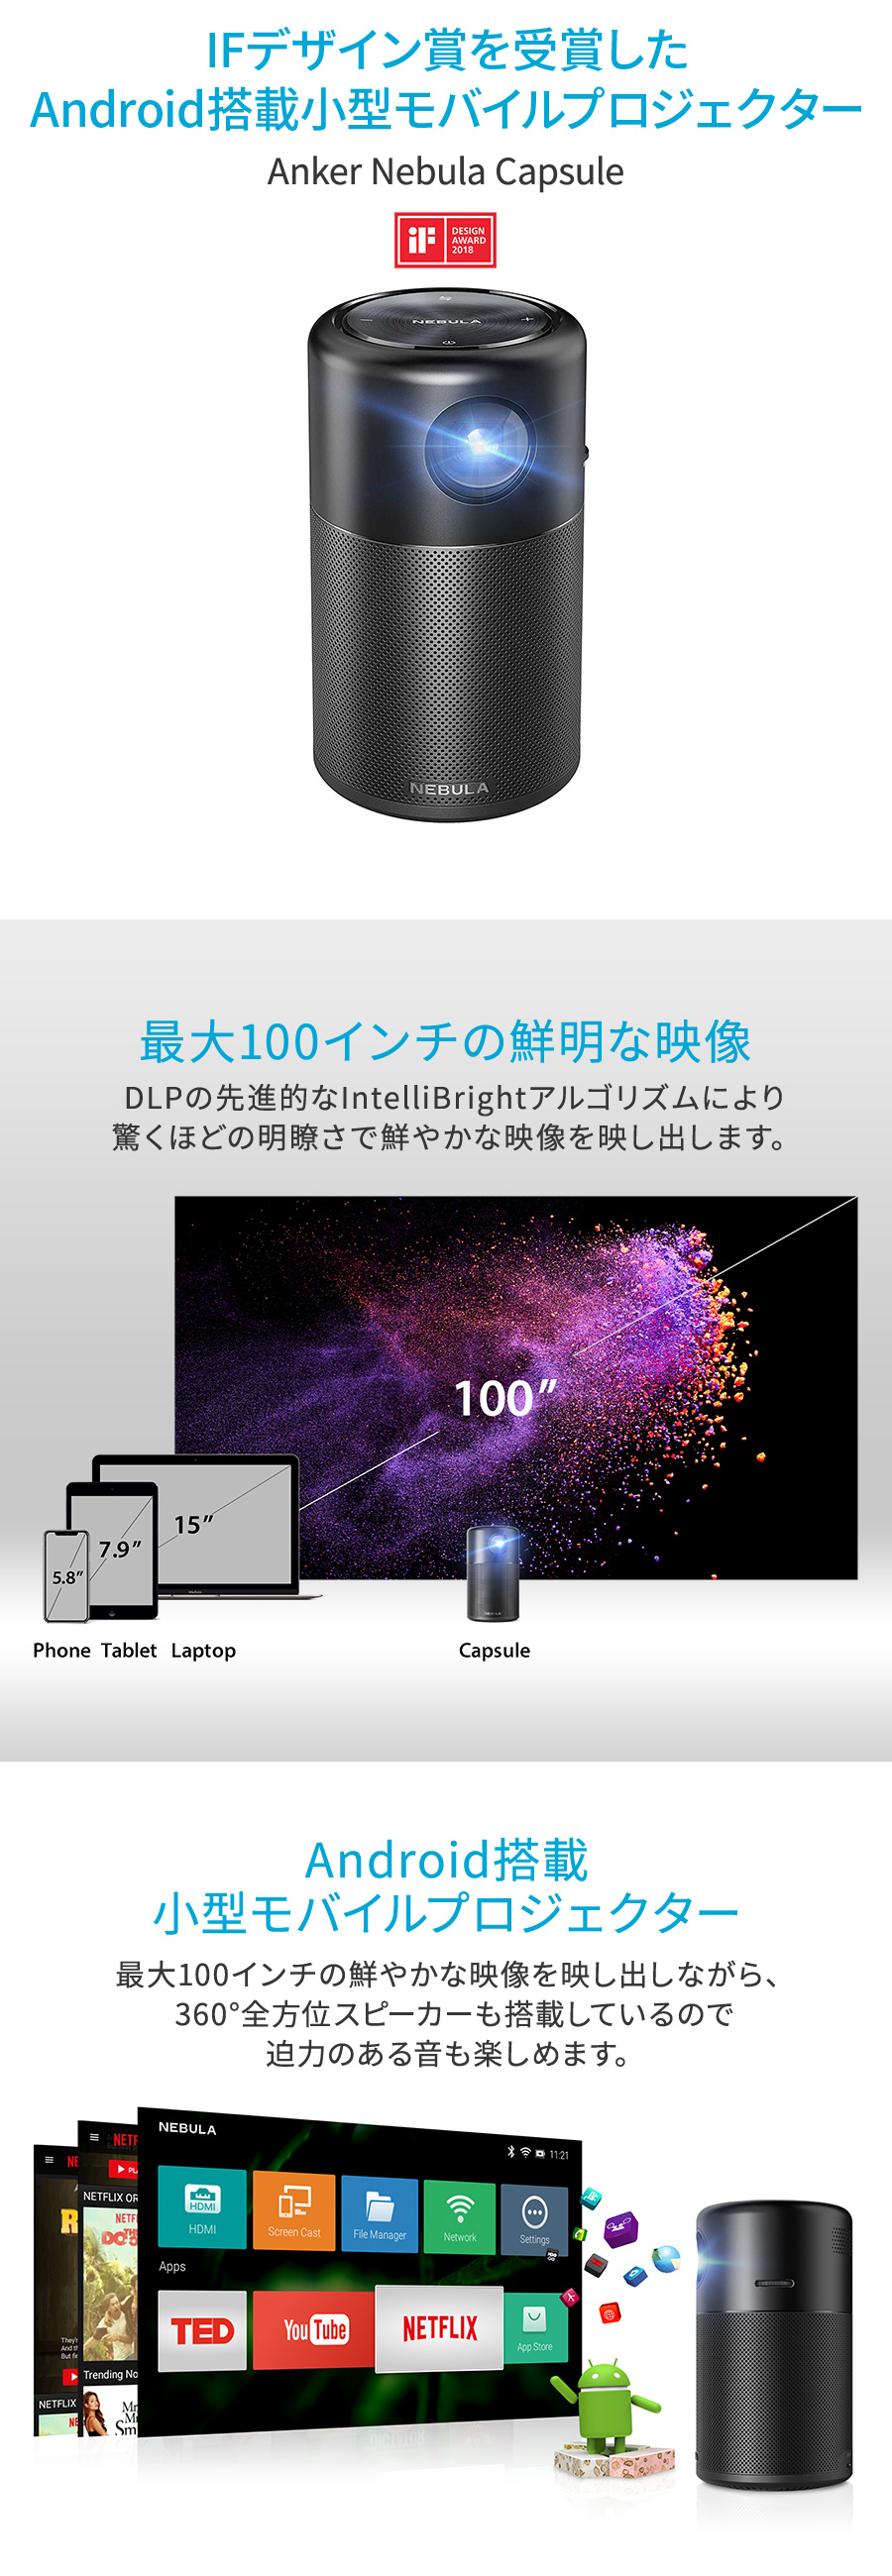 【楽天市場】Anker Nebula Capsule 小型モバイルプロジェクター Android搭載【100  ANSIルーメン/DLP搭載/360度スピーカー】: アンカー・ダイレクト楽天市場店